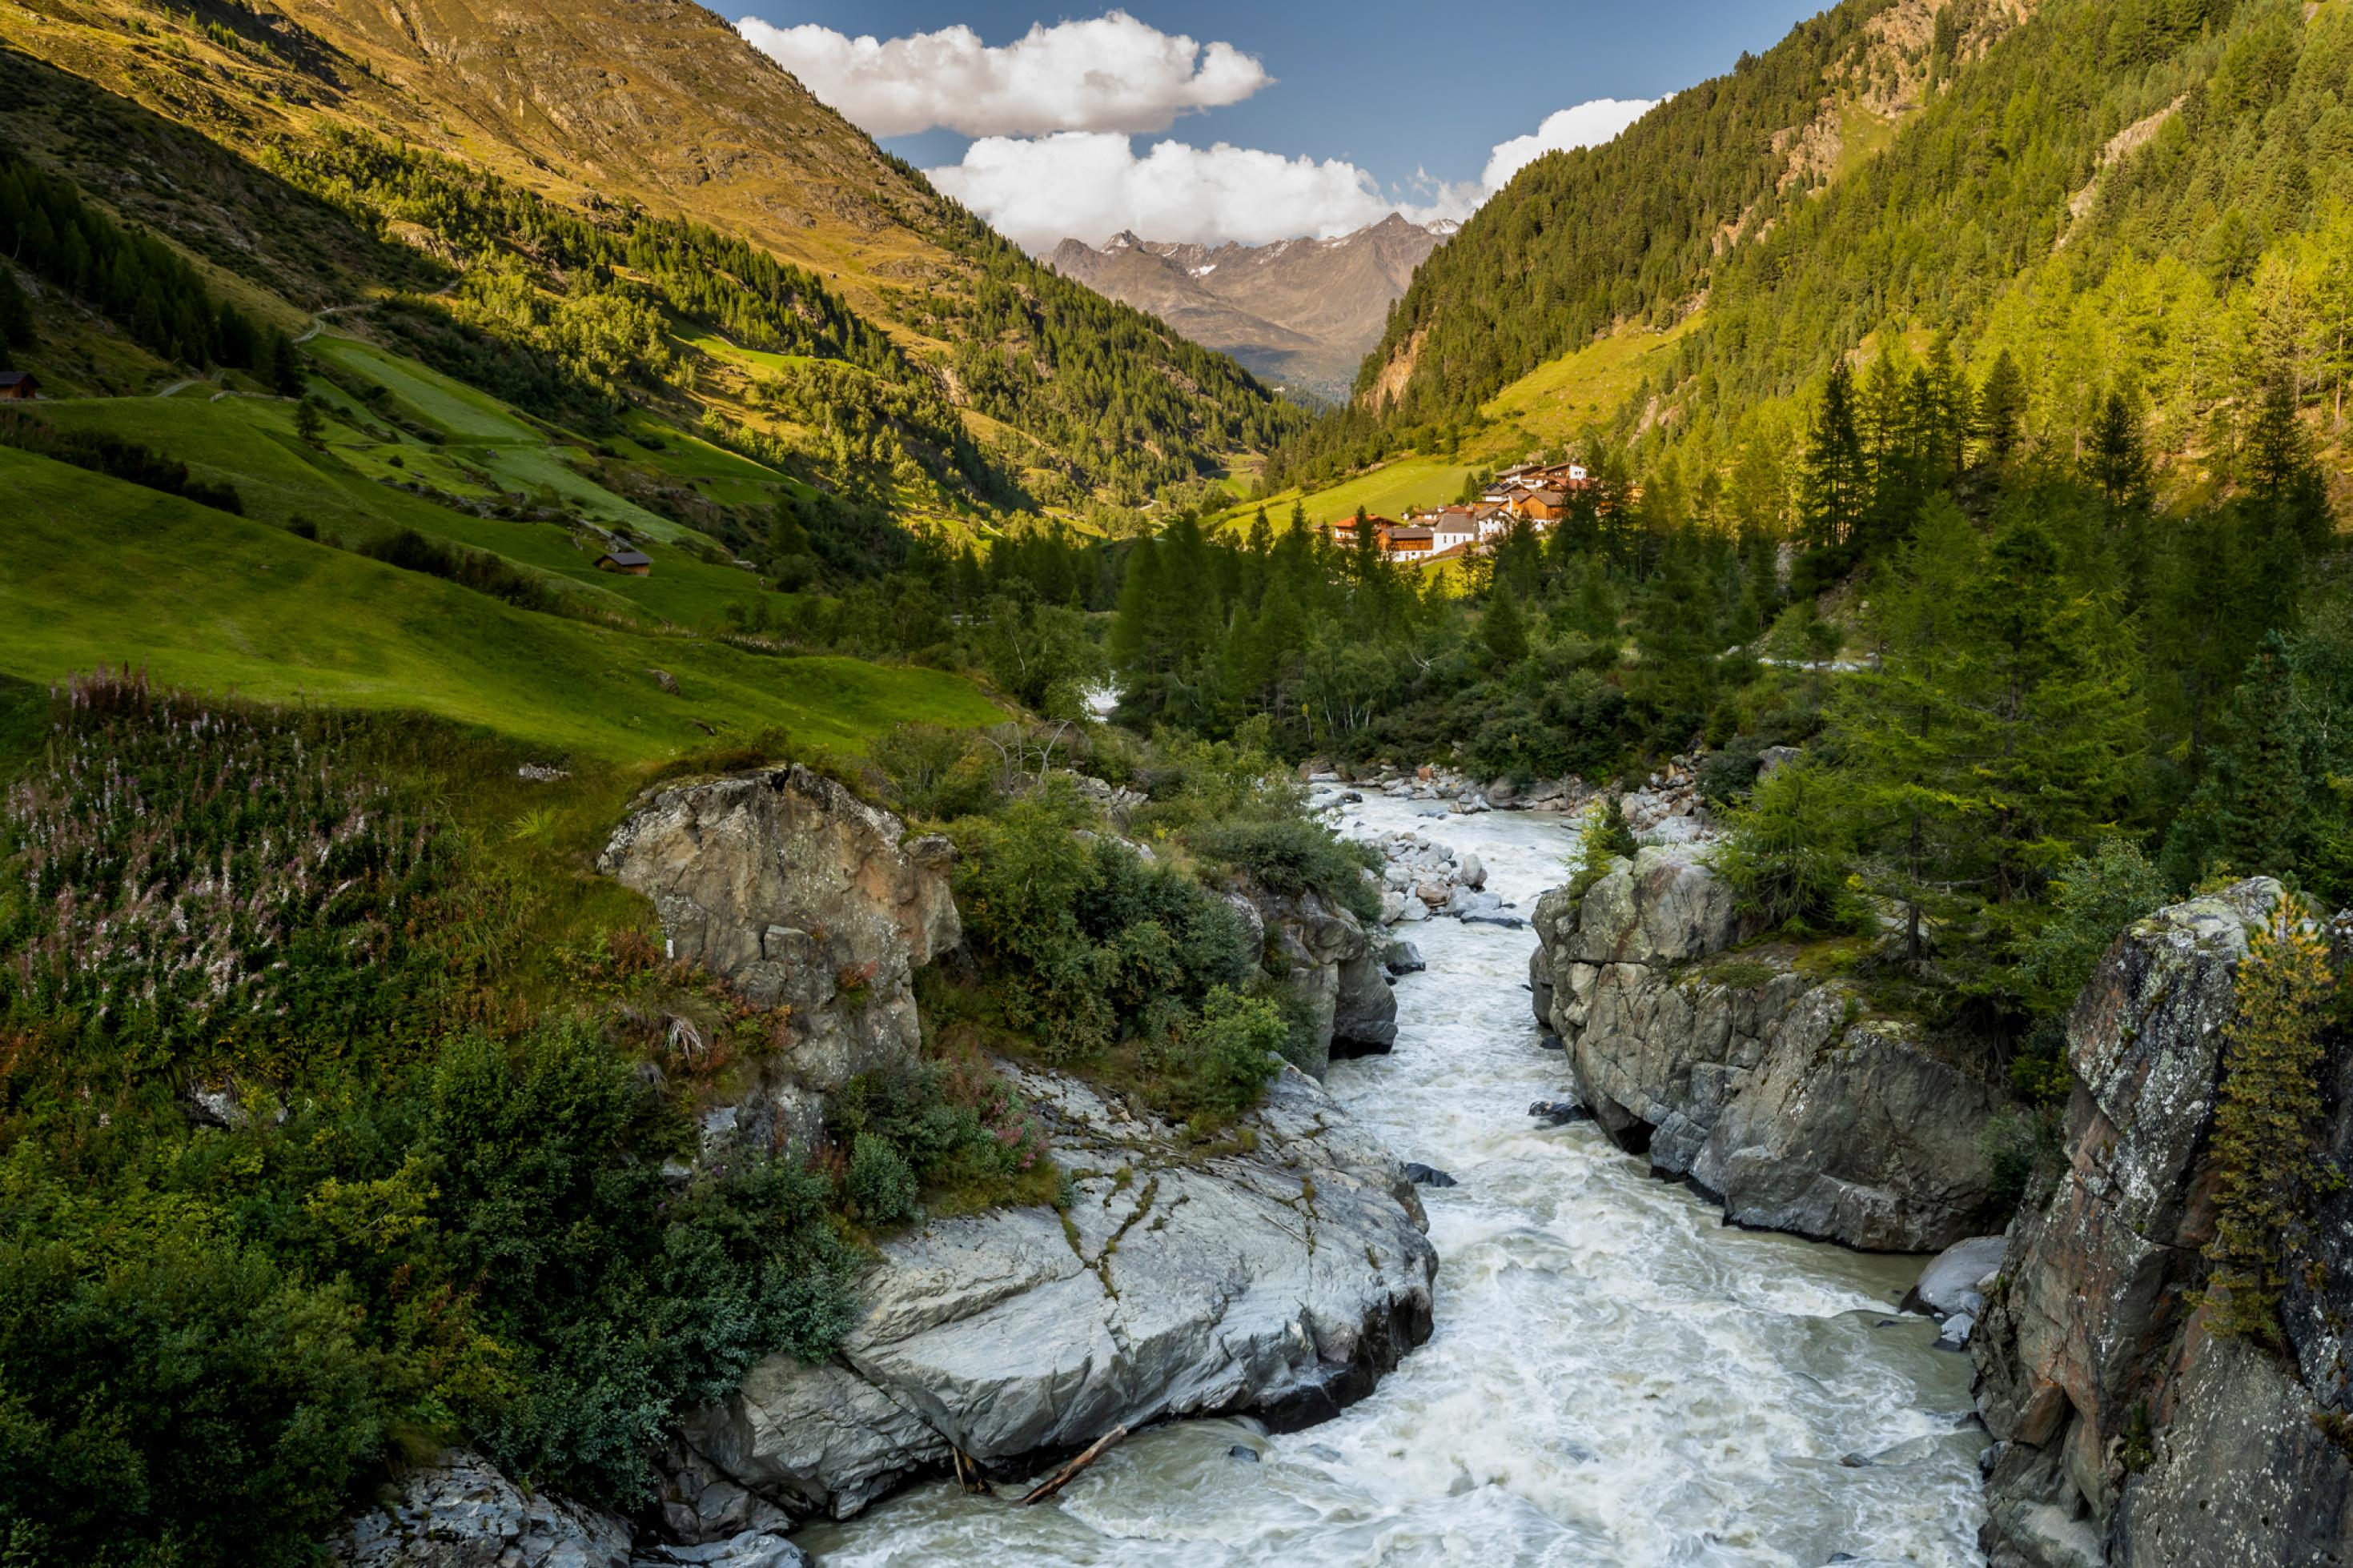 Gebirgsbach zwischen Felsen in einem engen, grünen Alpental